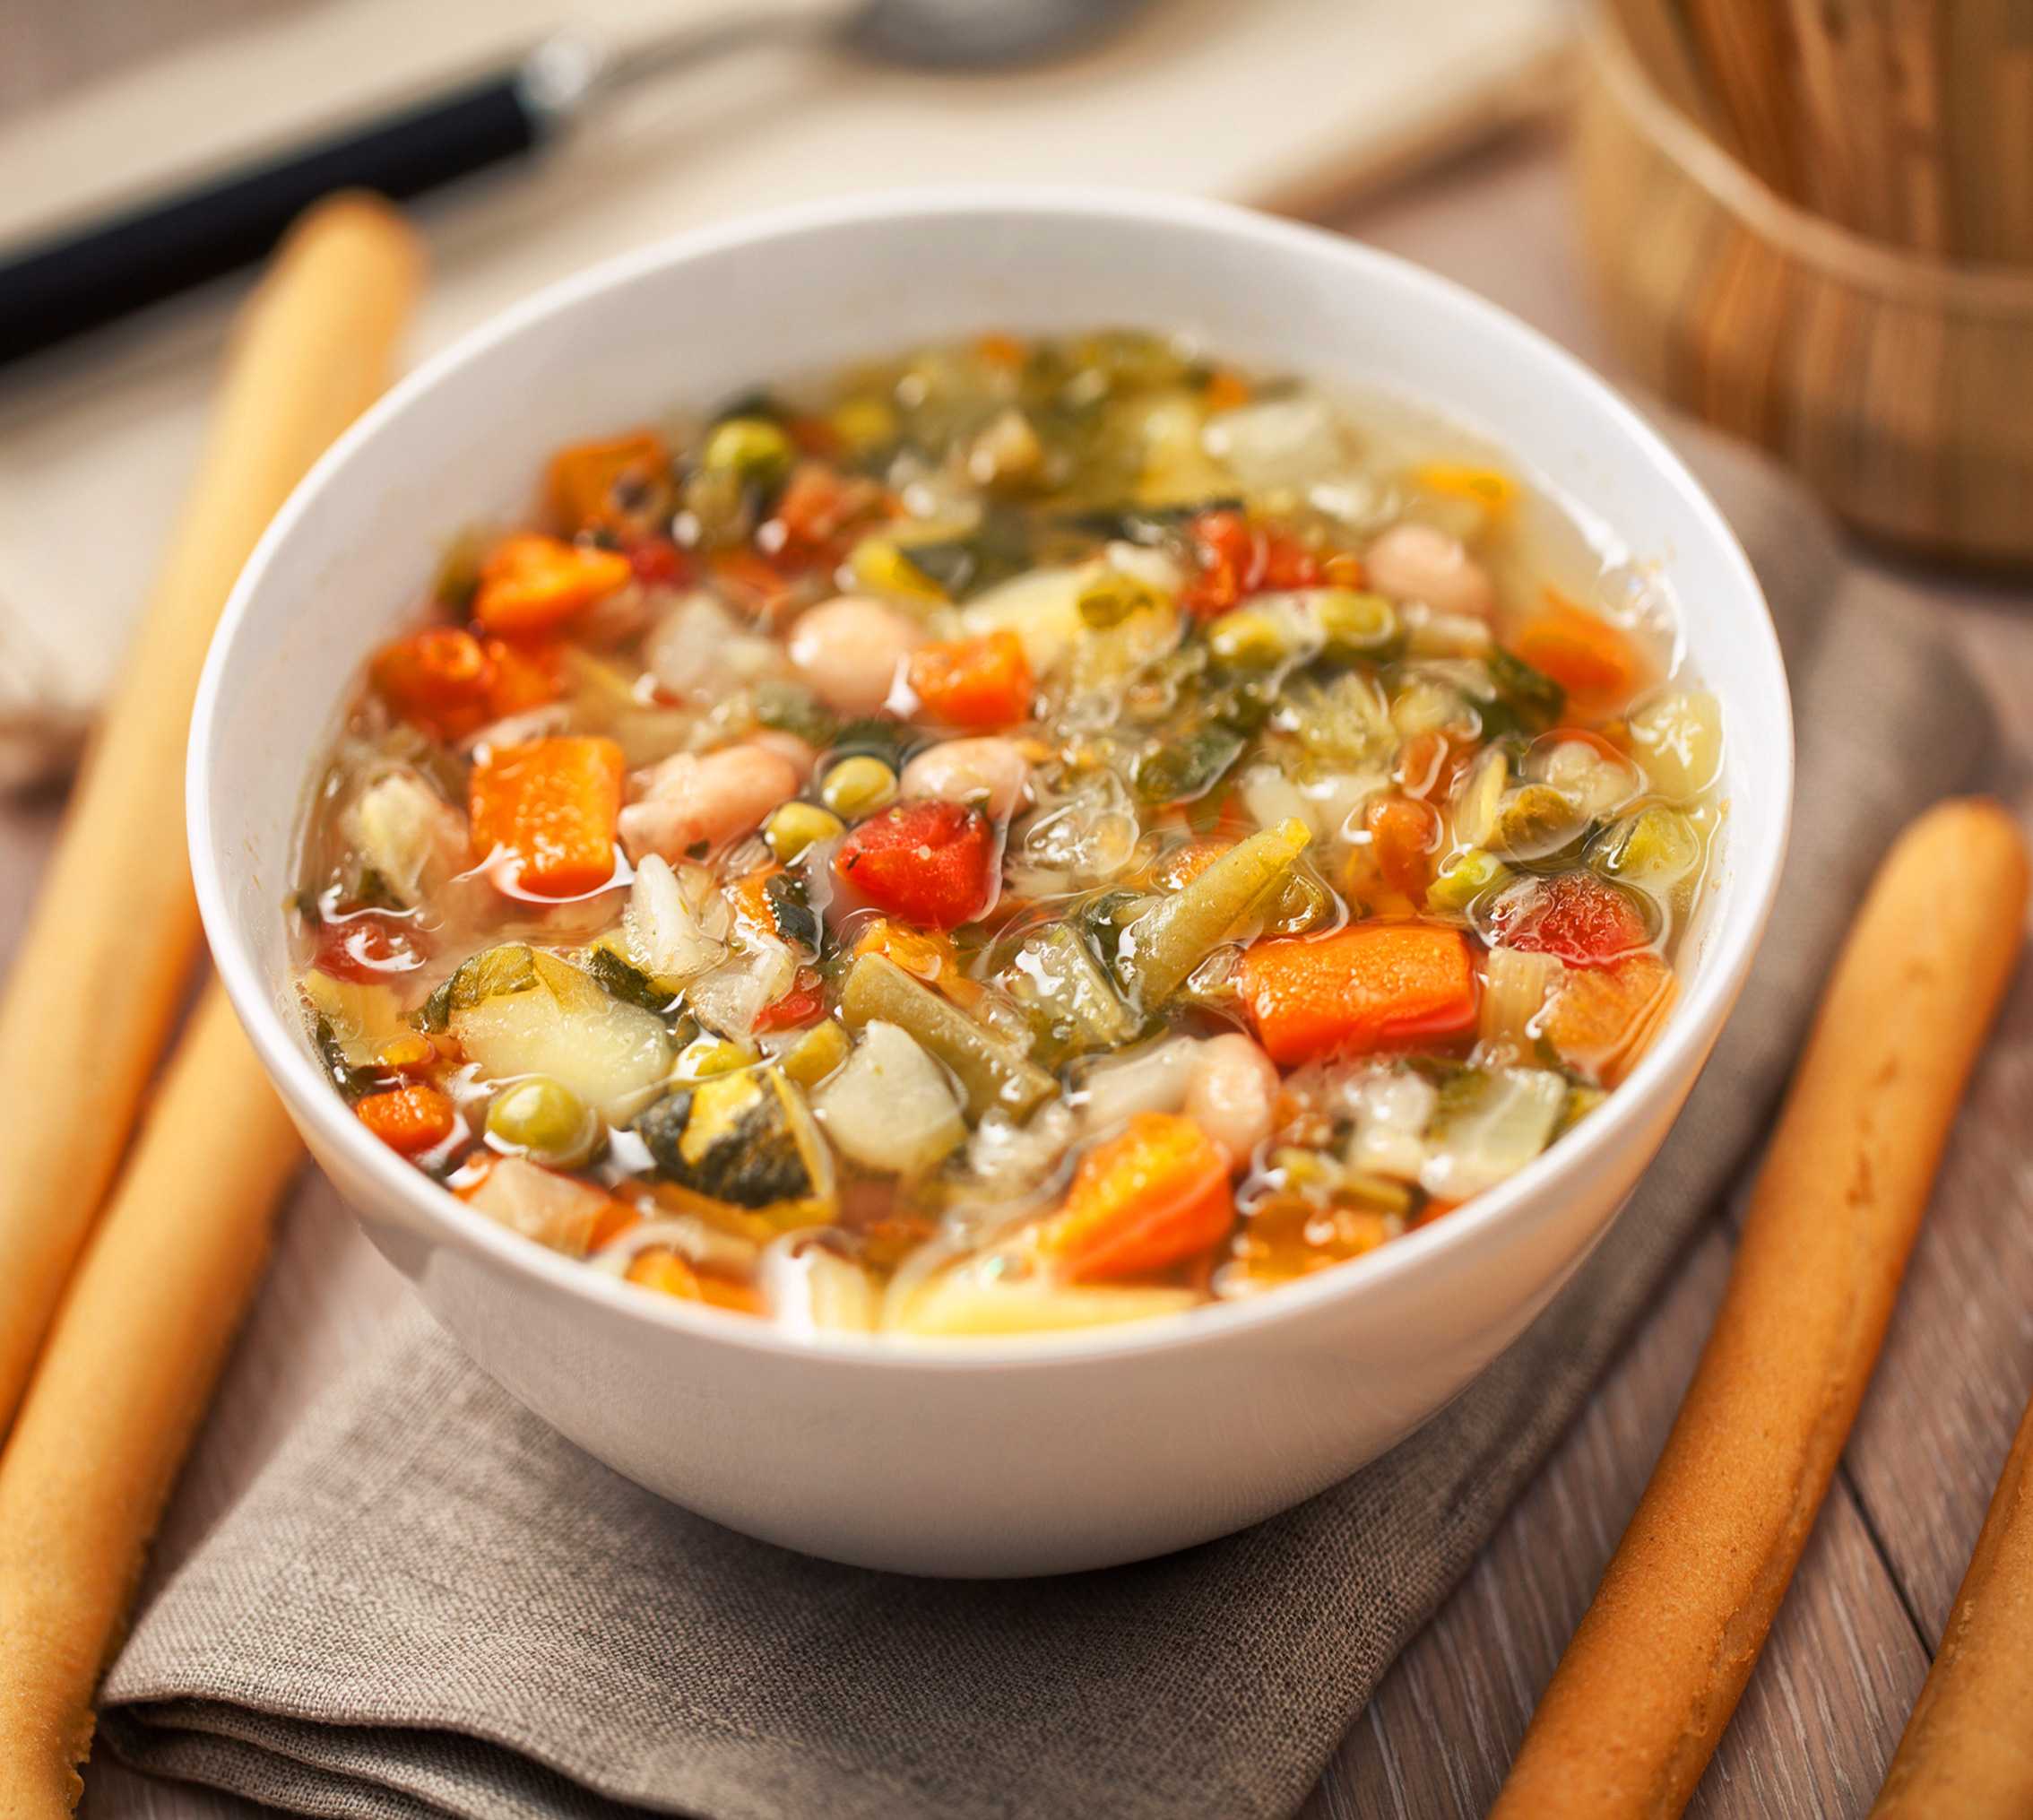 Суп минестроне – привет из солнечной италии! рецепты супов минестроне с пастой, беконом, грибами, фасолью, пармезаном